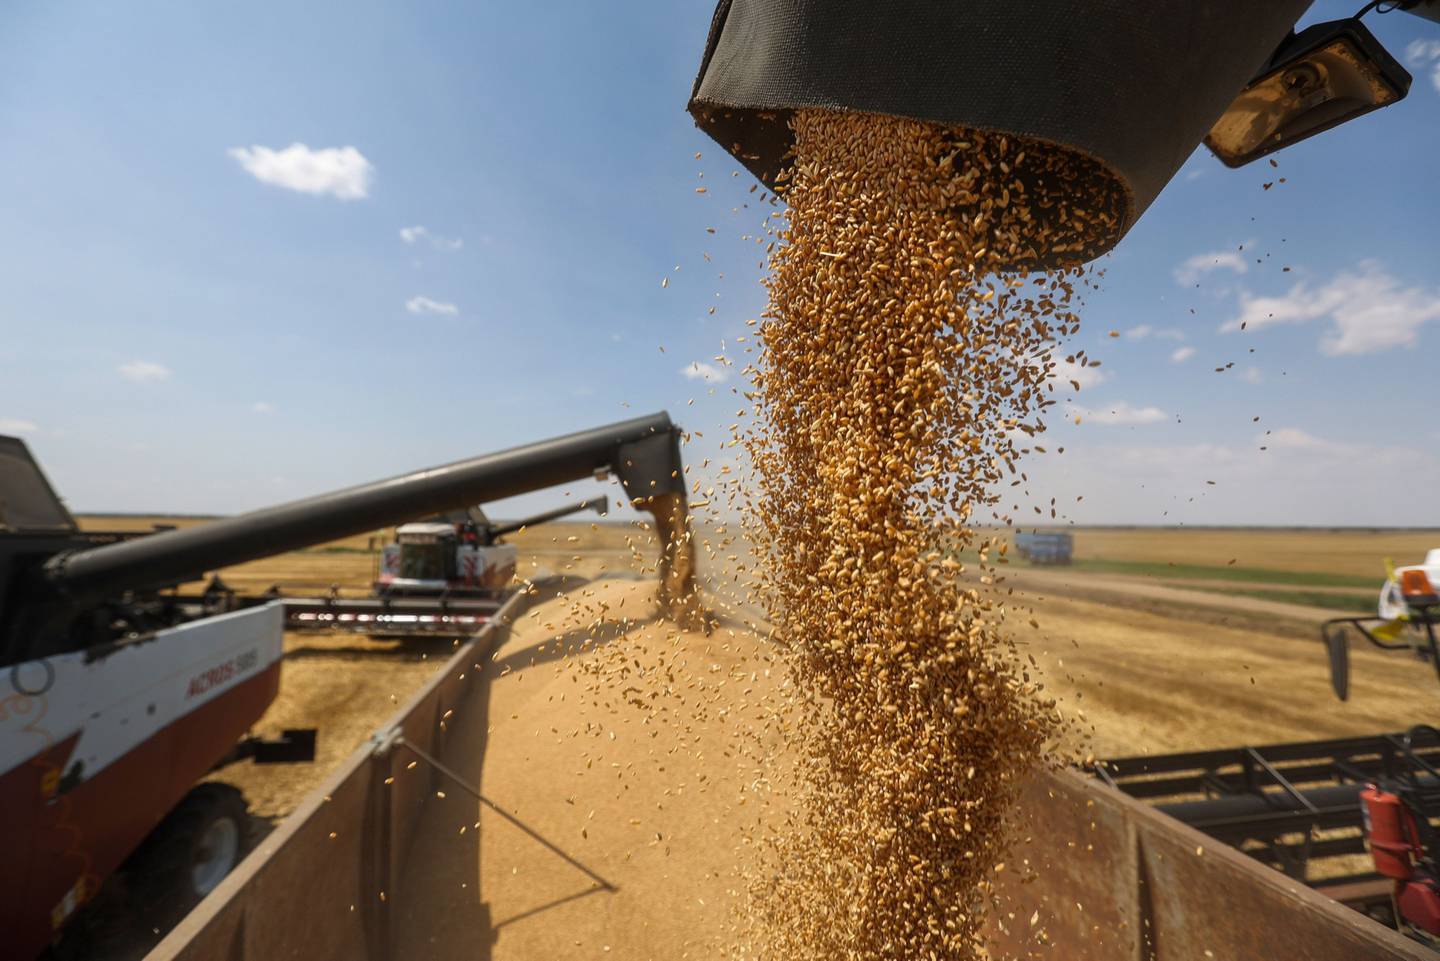 Rusia ha seguido enviando su trigo al precio ahora más alto. Fotógrafo: Andrey Rudakov/Bloombergdfd